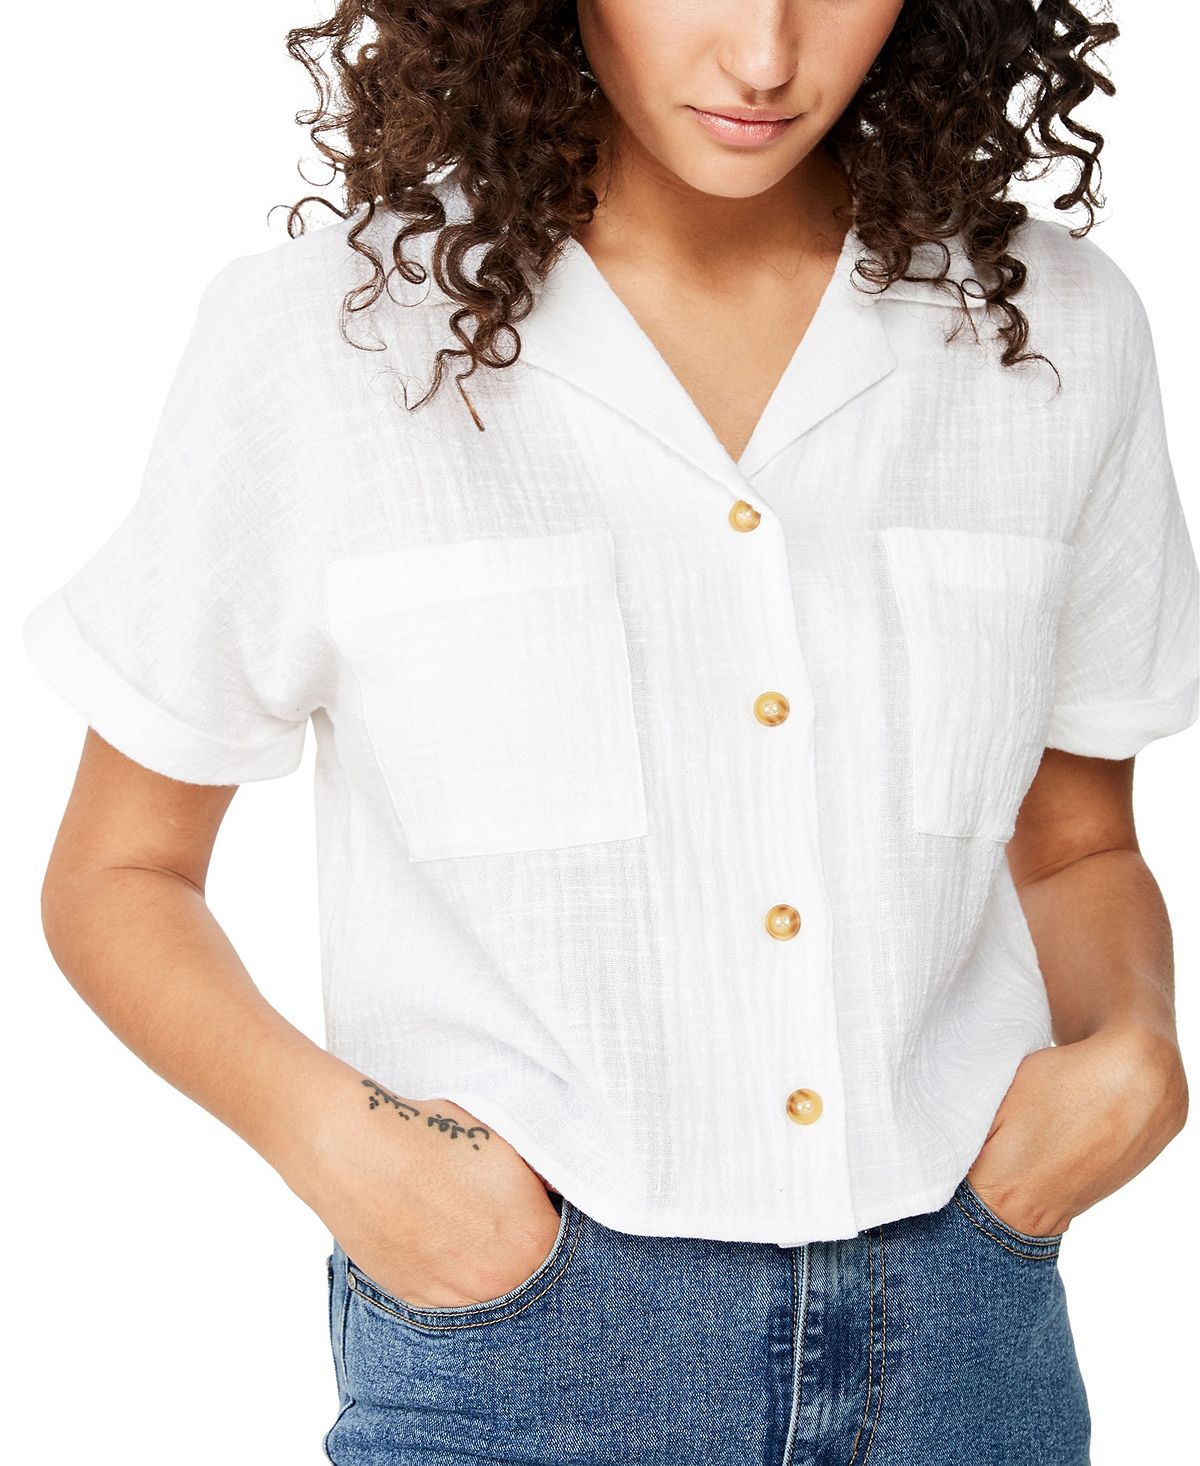 Cotton On Erika Short Sleeve Shirt White